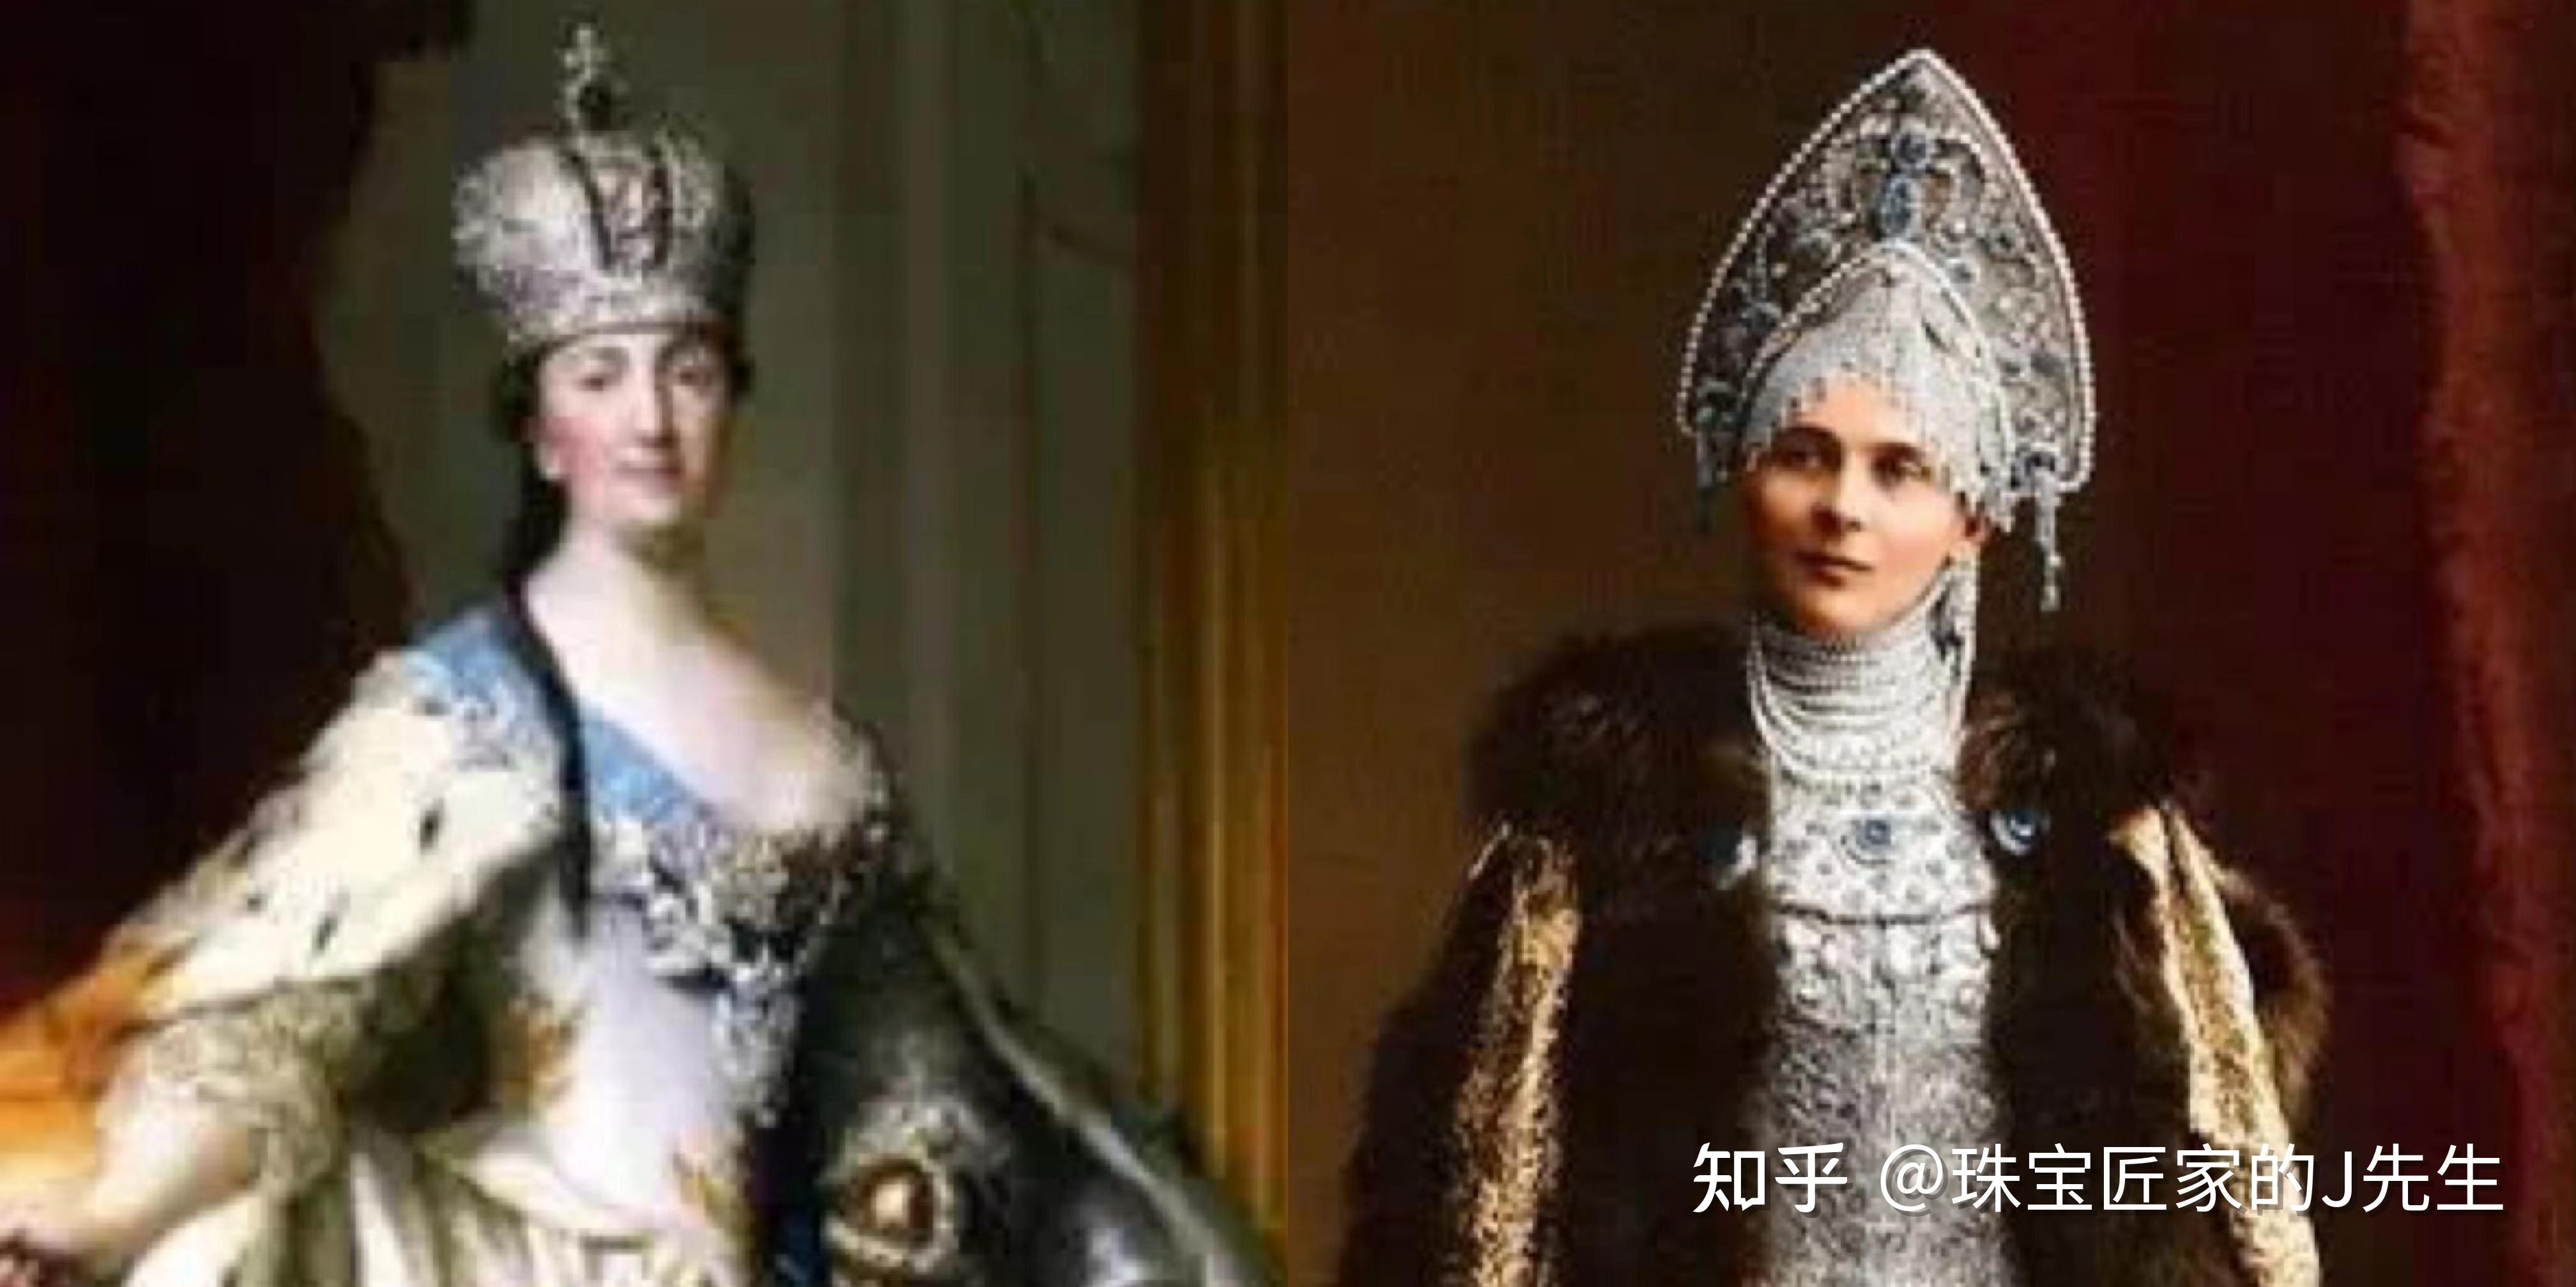 左:叶卡捷琳娜二世 右:齐娜伊达·尤苏波娃而今天这篇文章的主人公